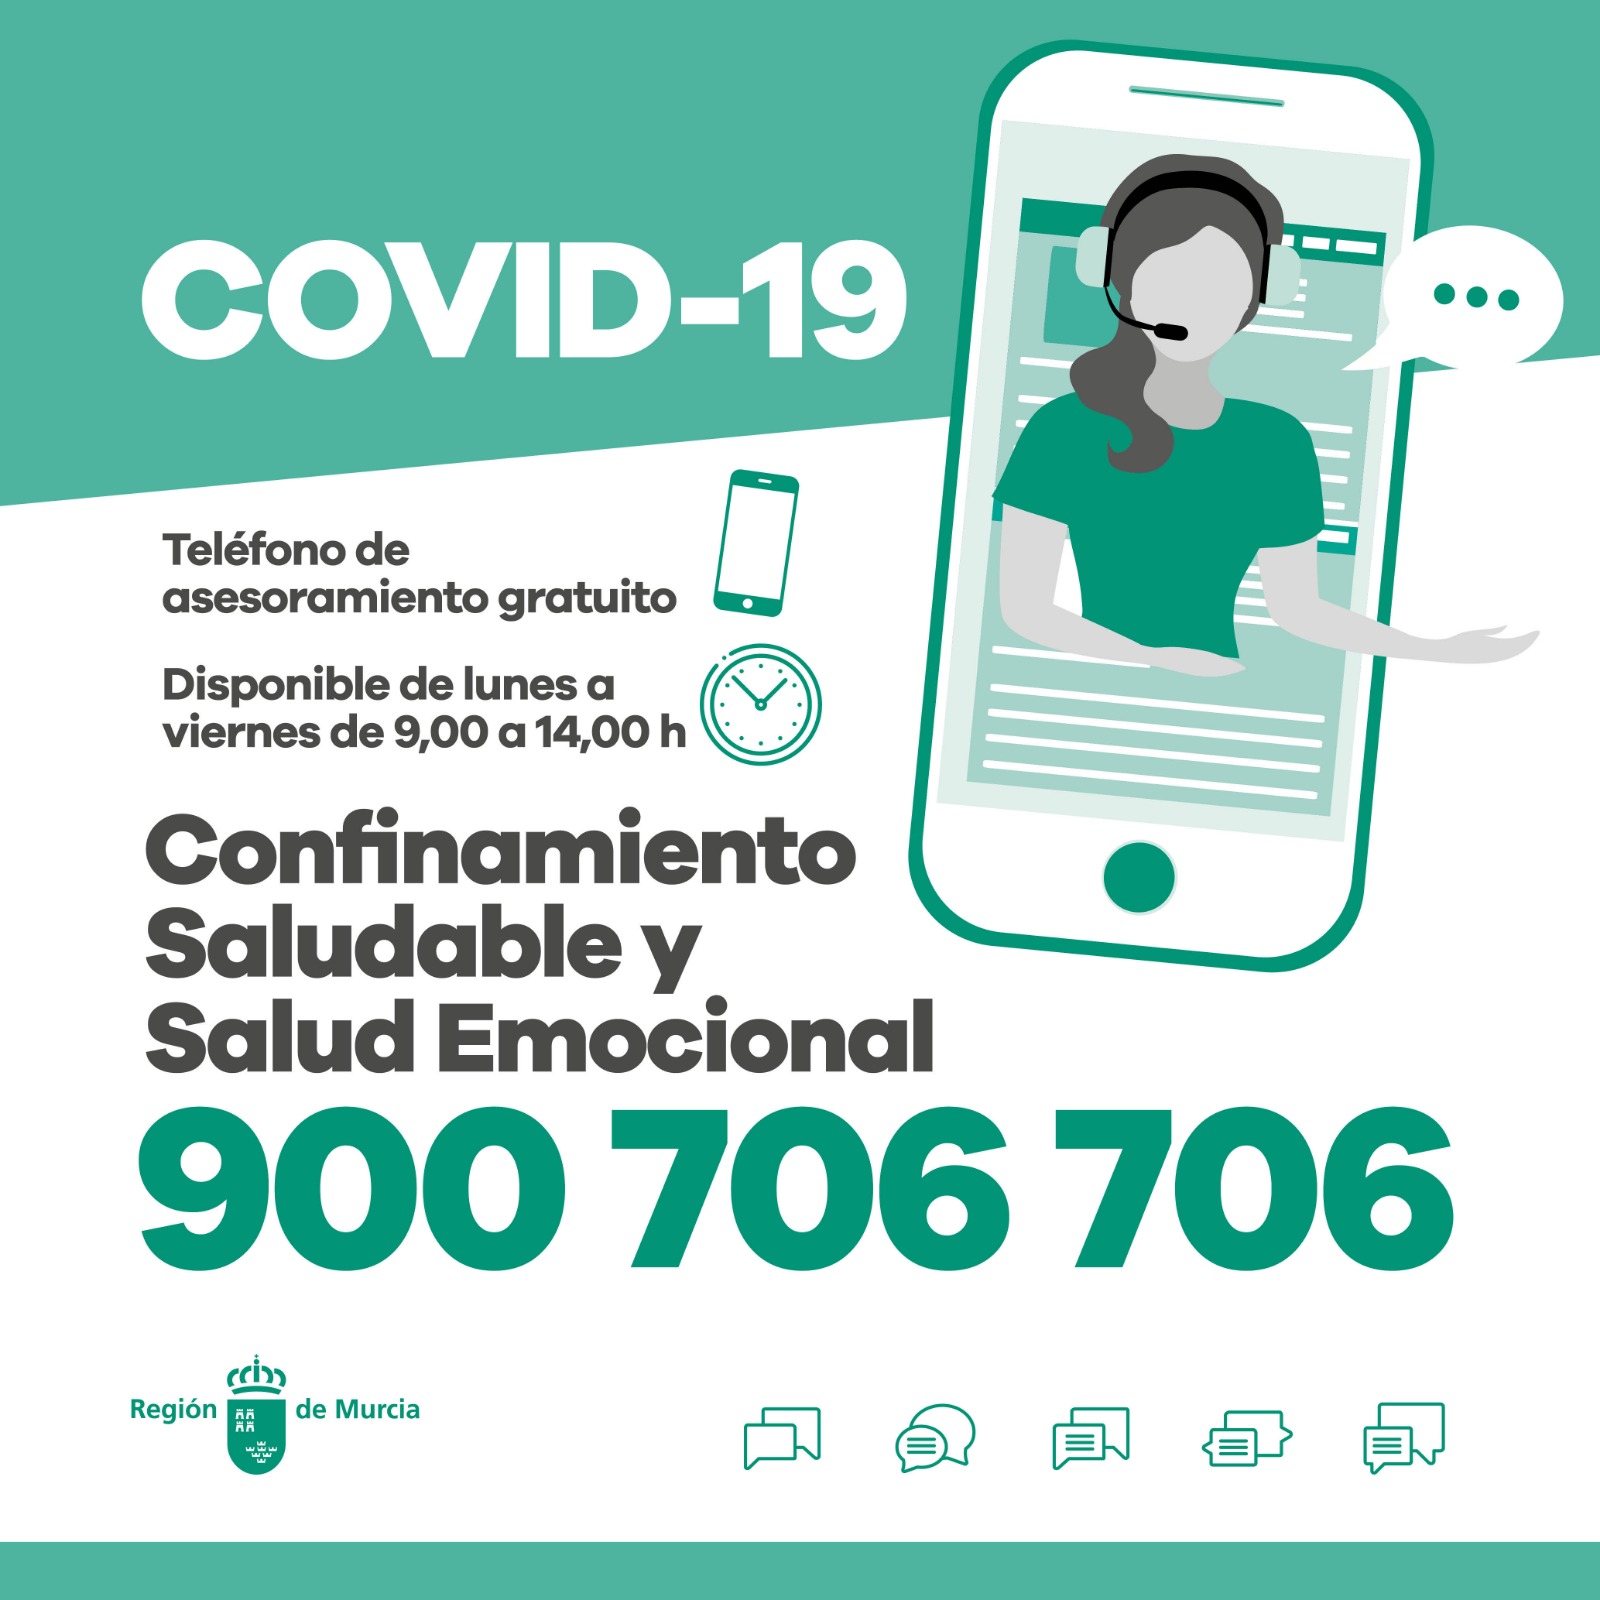 Teléfono de asesoramiento gratuito para un confinamiento saludable y salud emocional por COVID-19  y otros documentos de interés